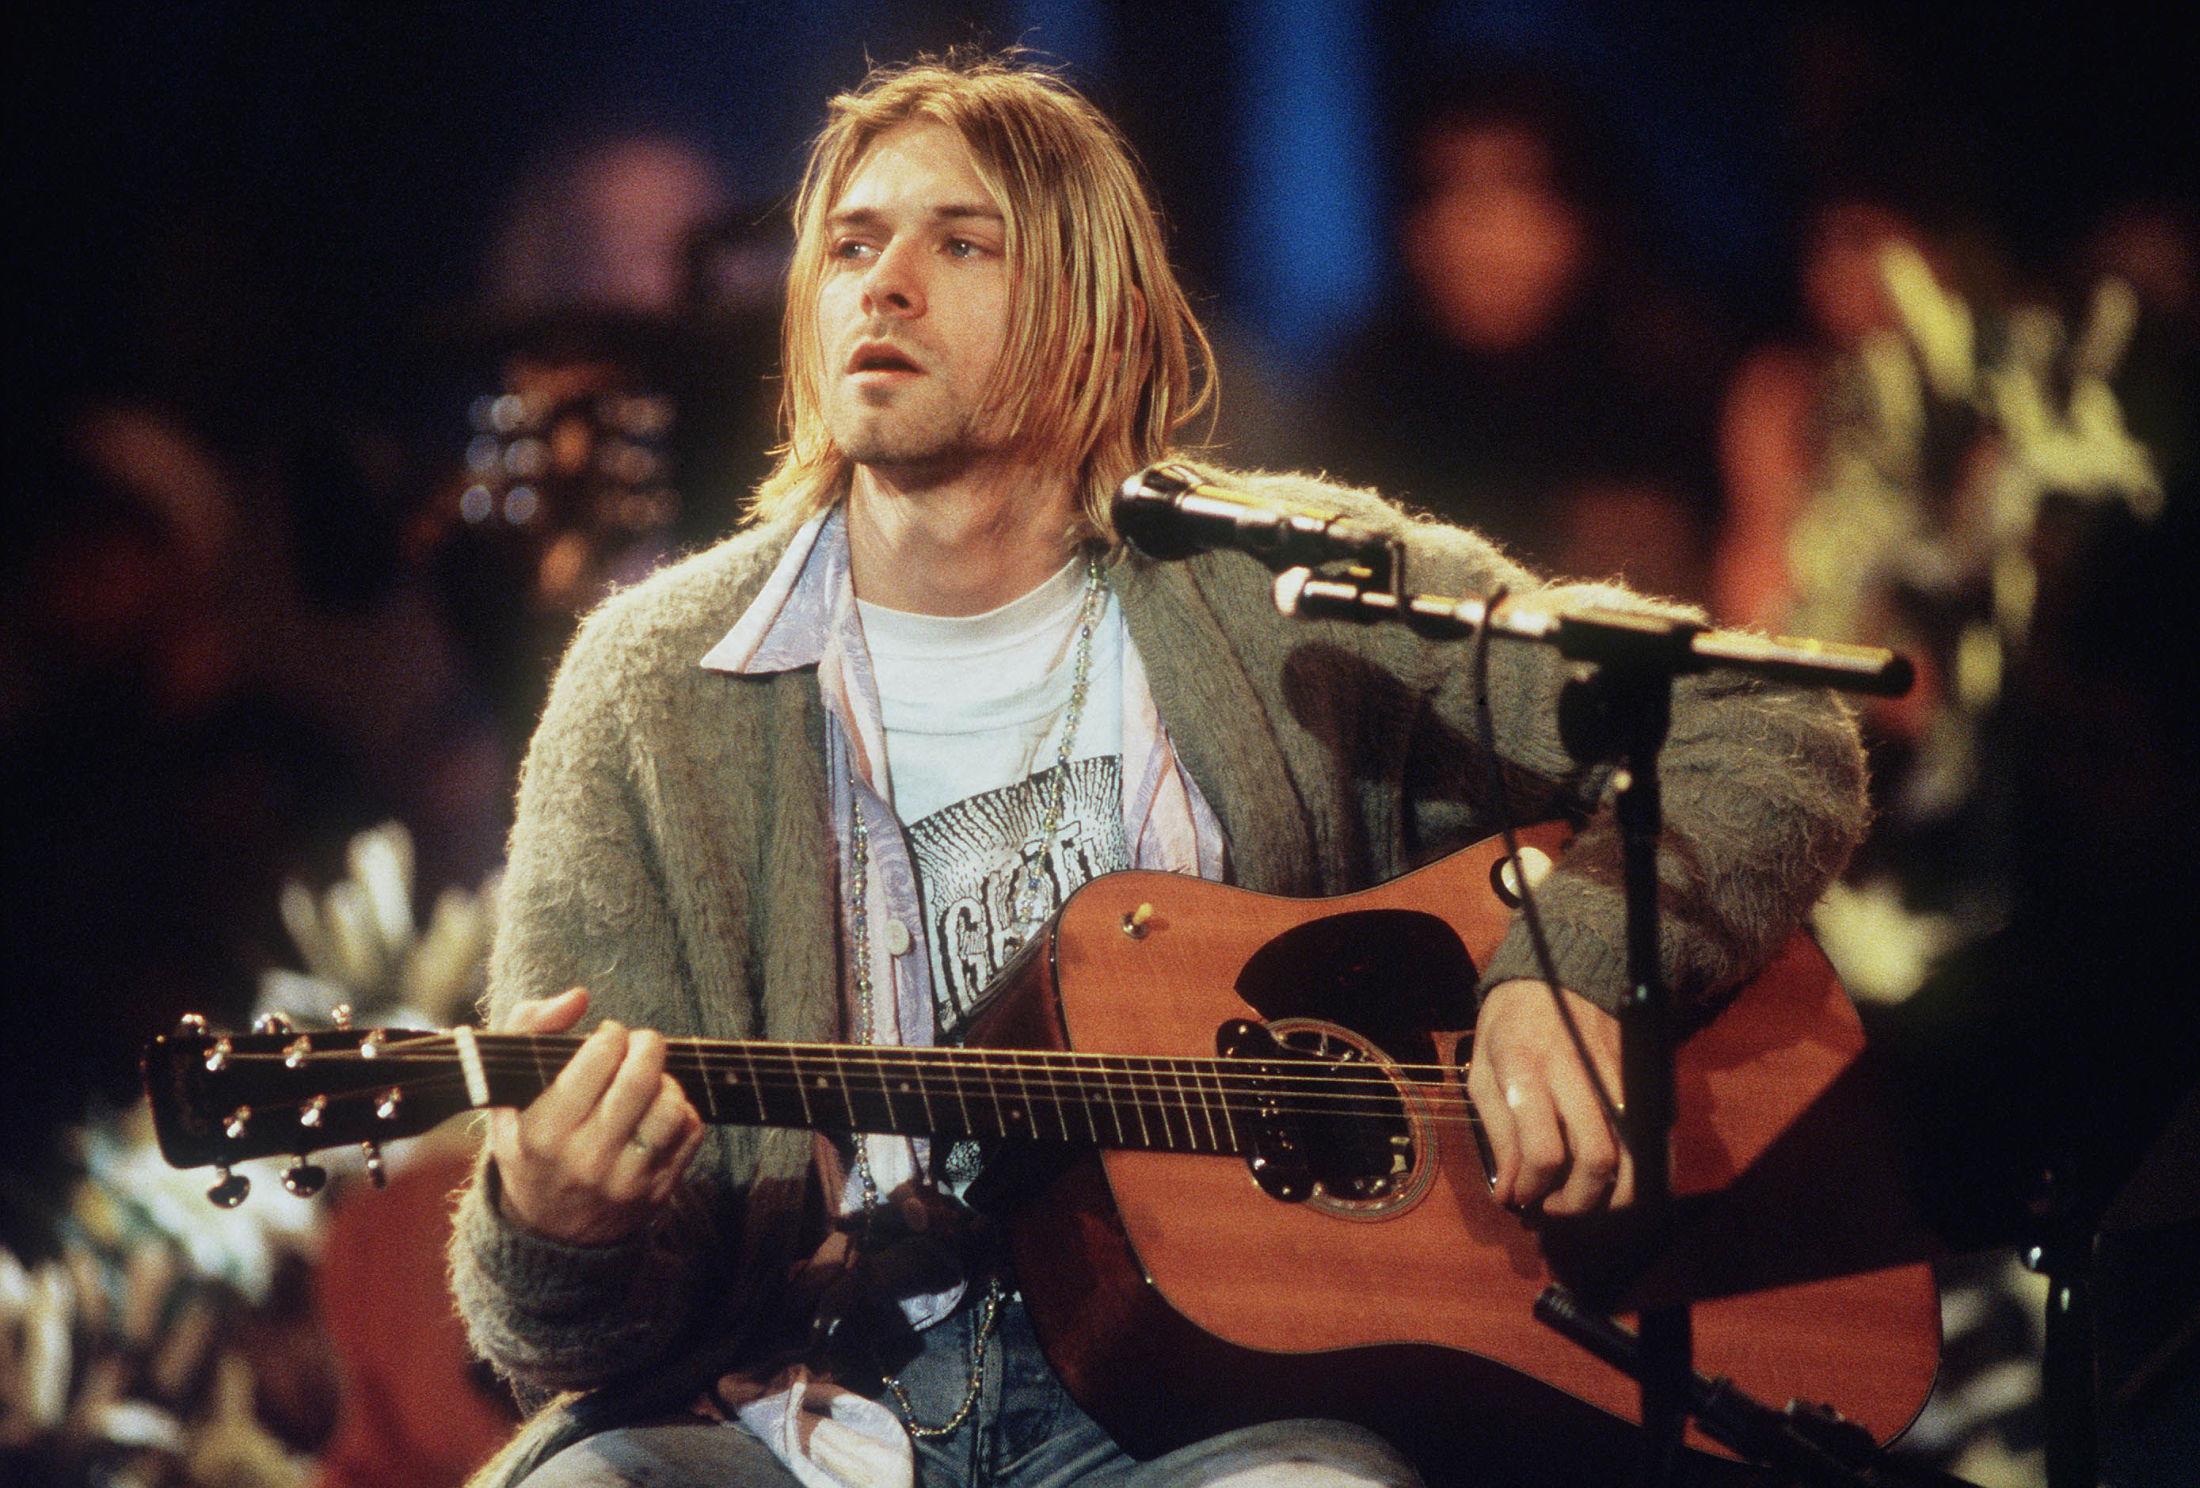 FRONTFIGUR: Kurt Cobain var frontfigur og vokalist i grunge-bandet Nirvana. Her er Cobain under innspillingen av musikkprogrammet MTV Unplugged i 1993. Foto: Getty Images